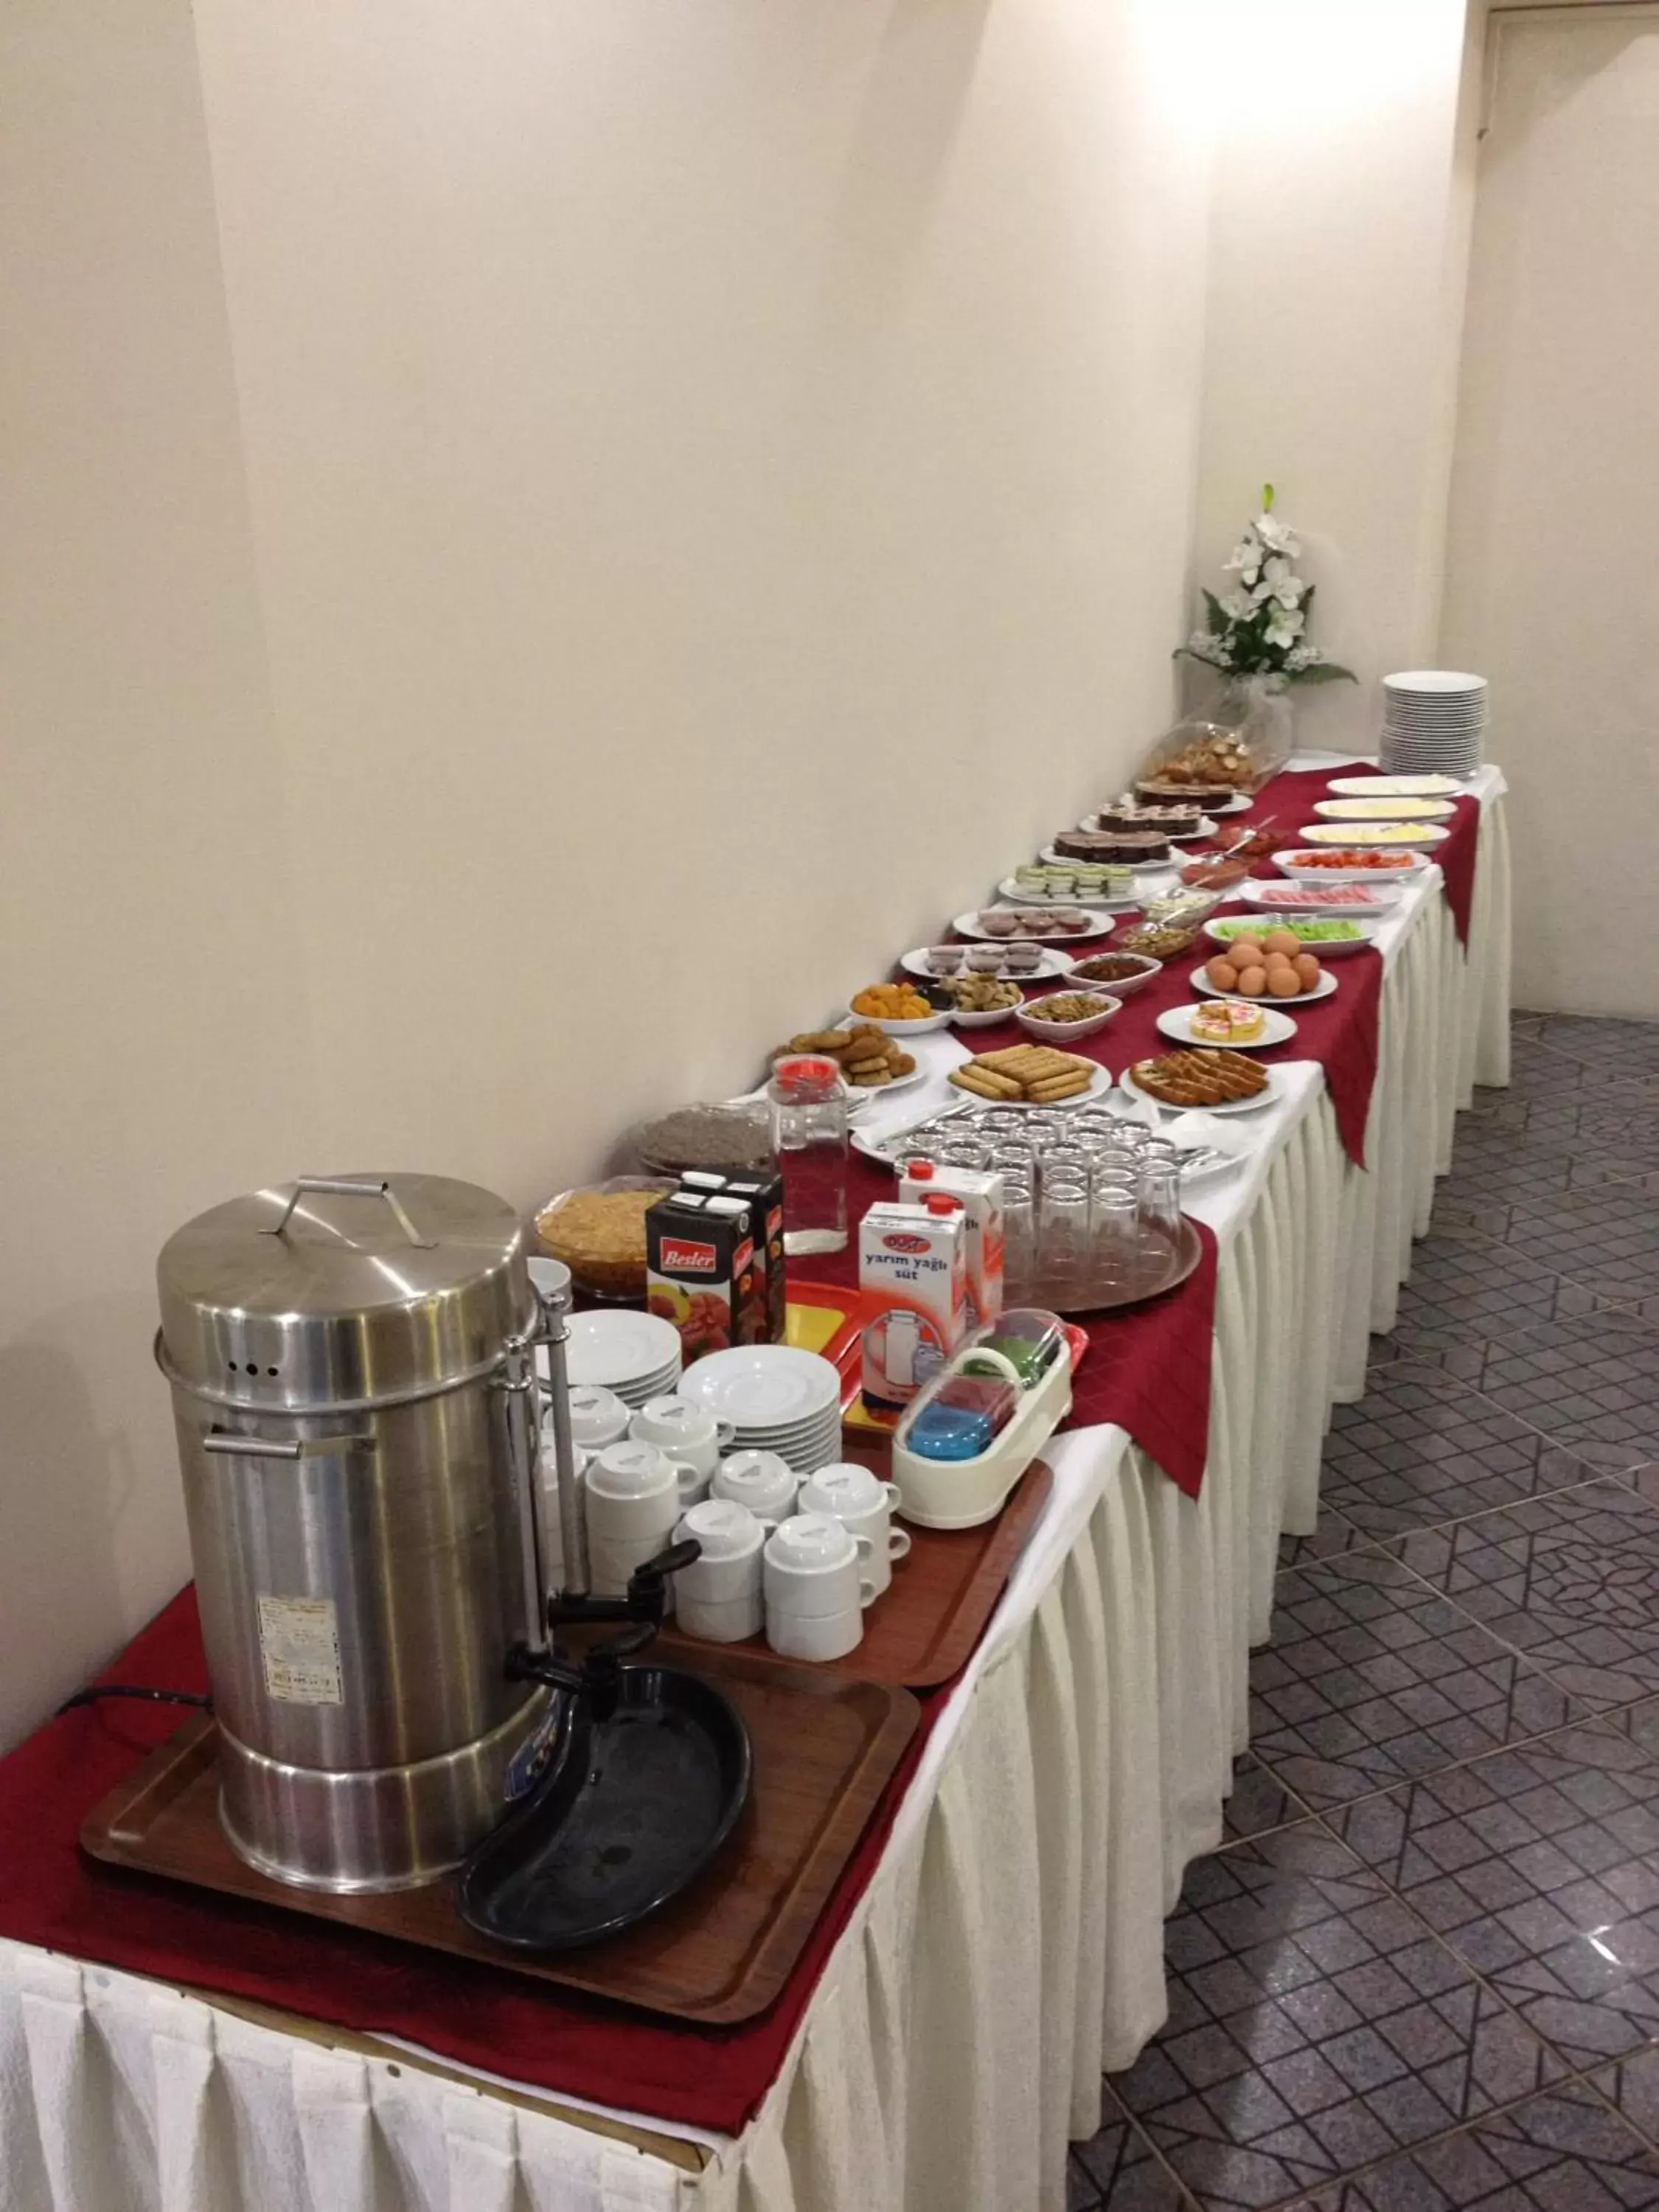 Buffet breakfast in Anil Hotel